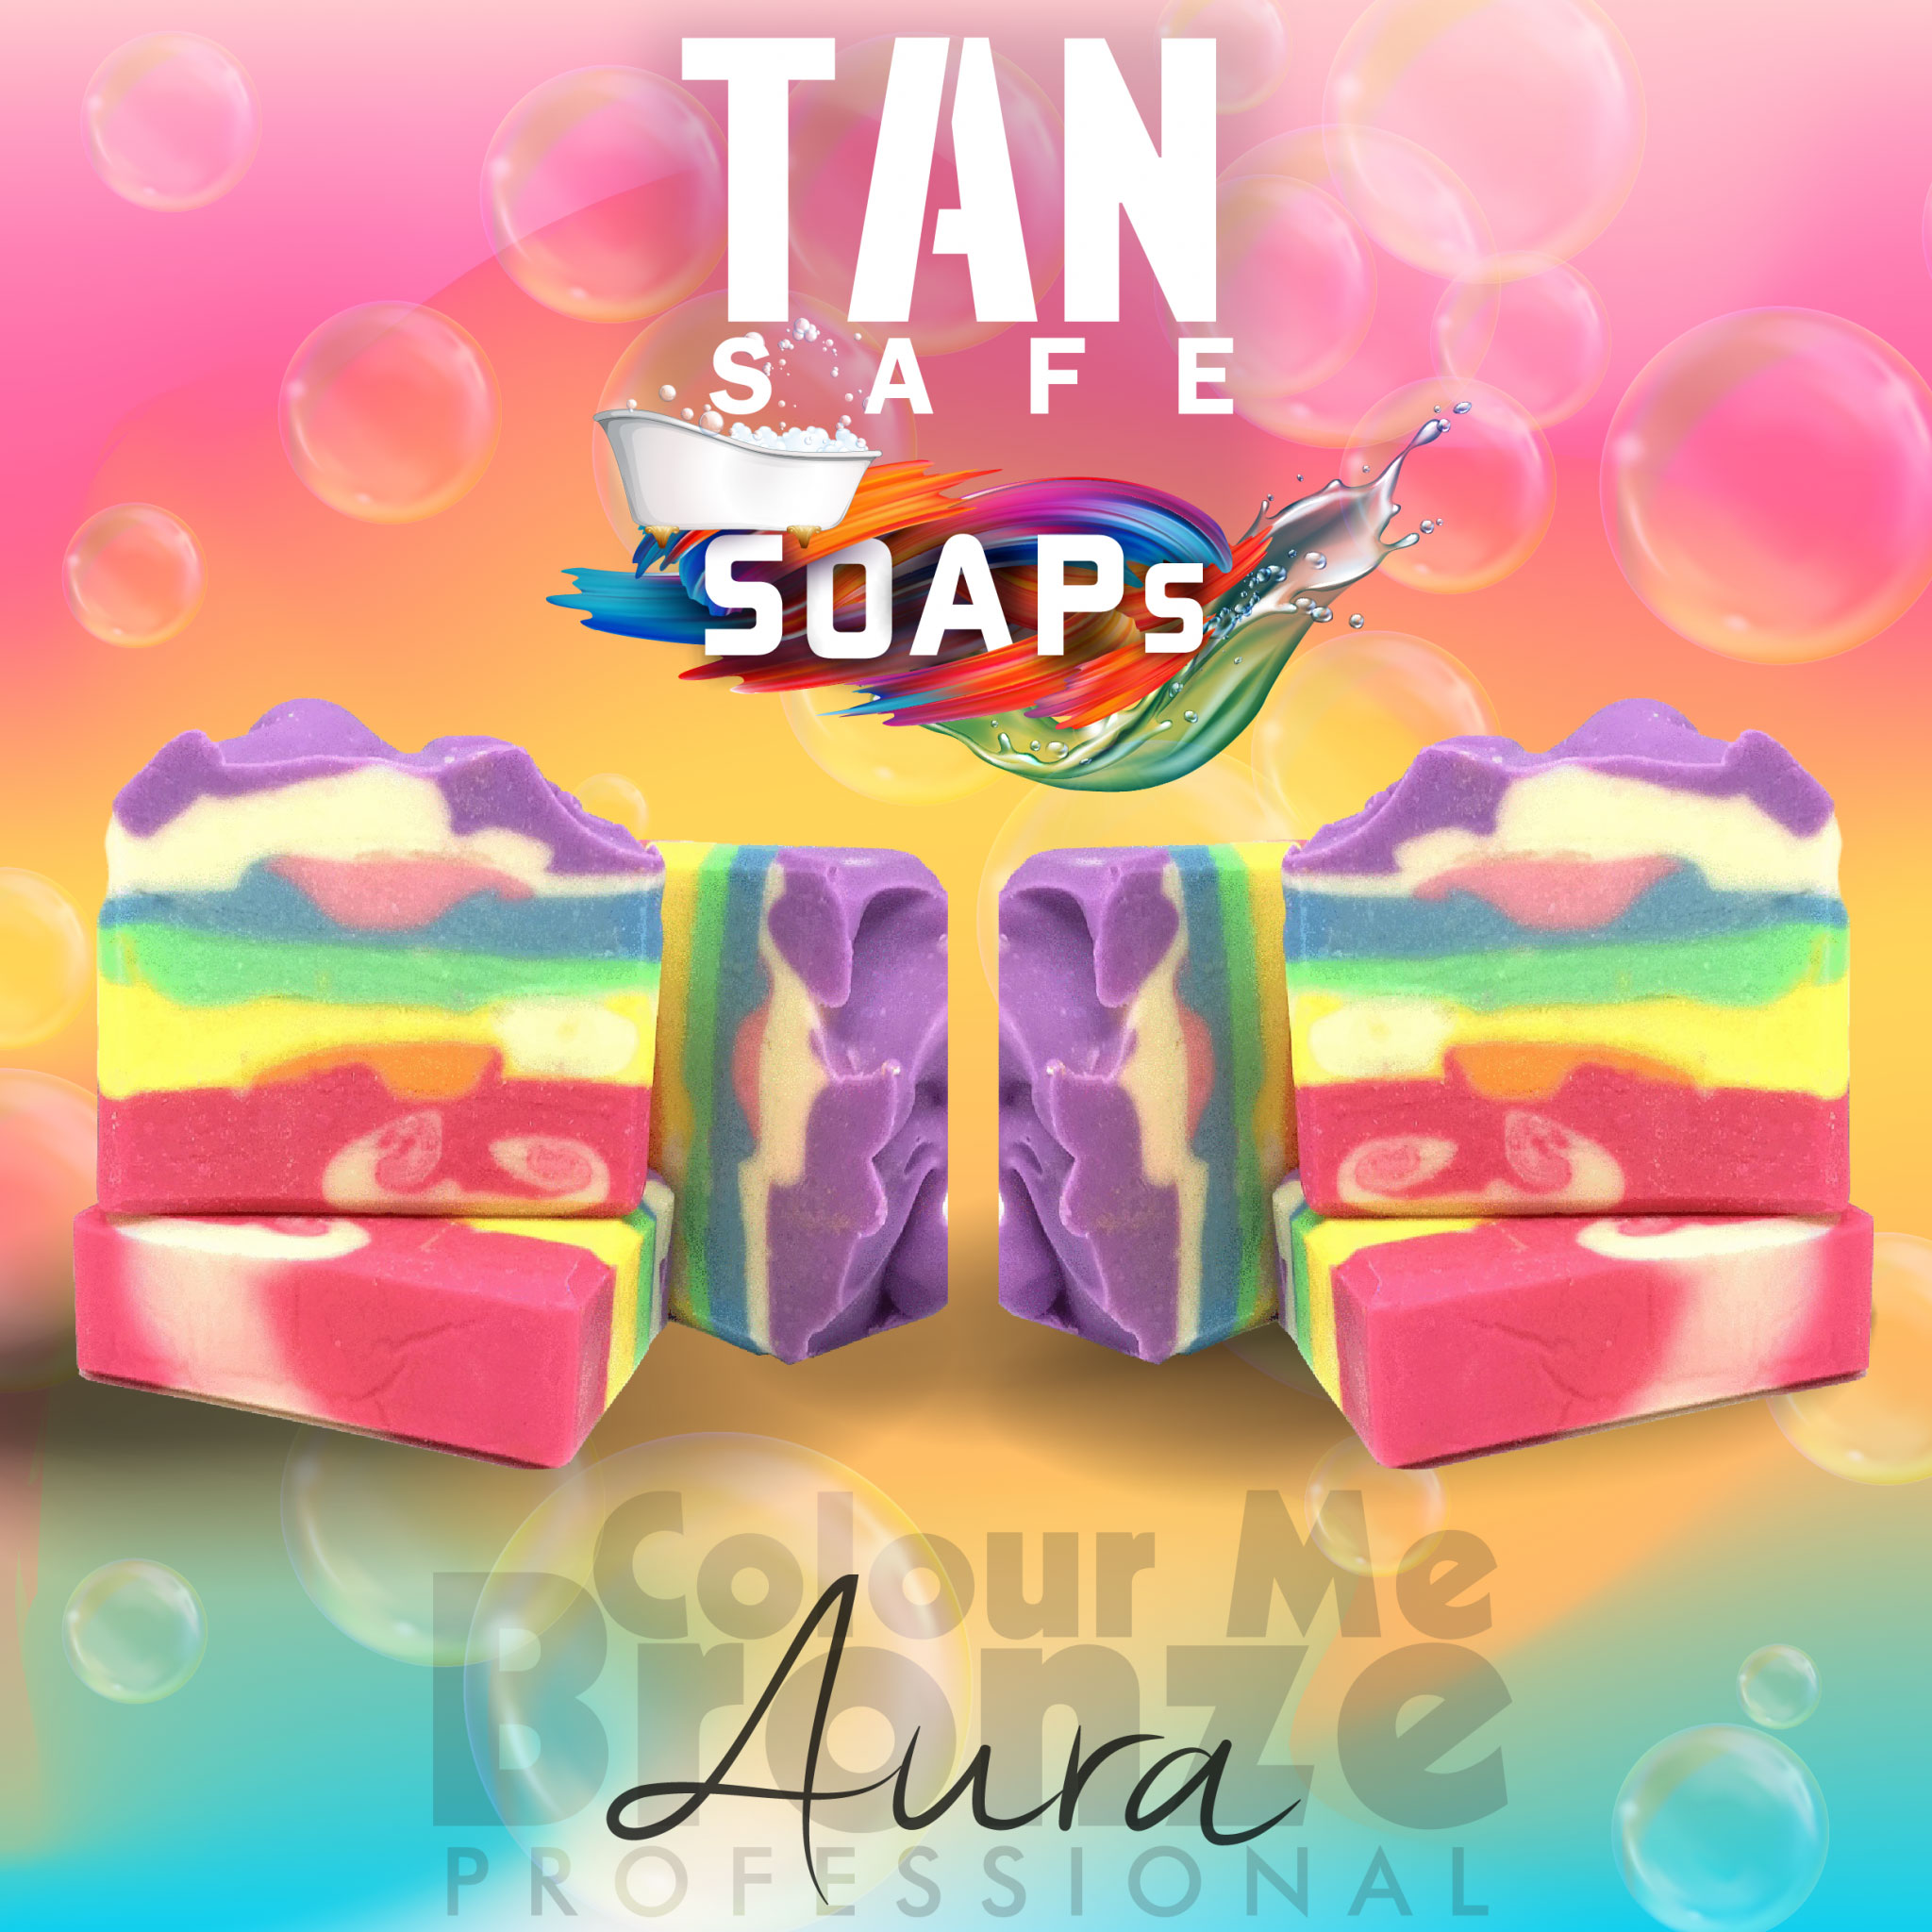 Colour Me Bronze Professional TANsafe Soap - Aura